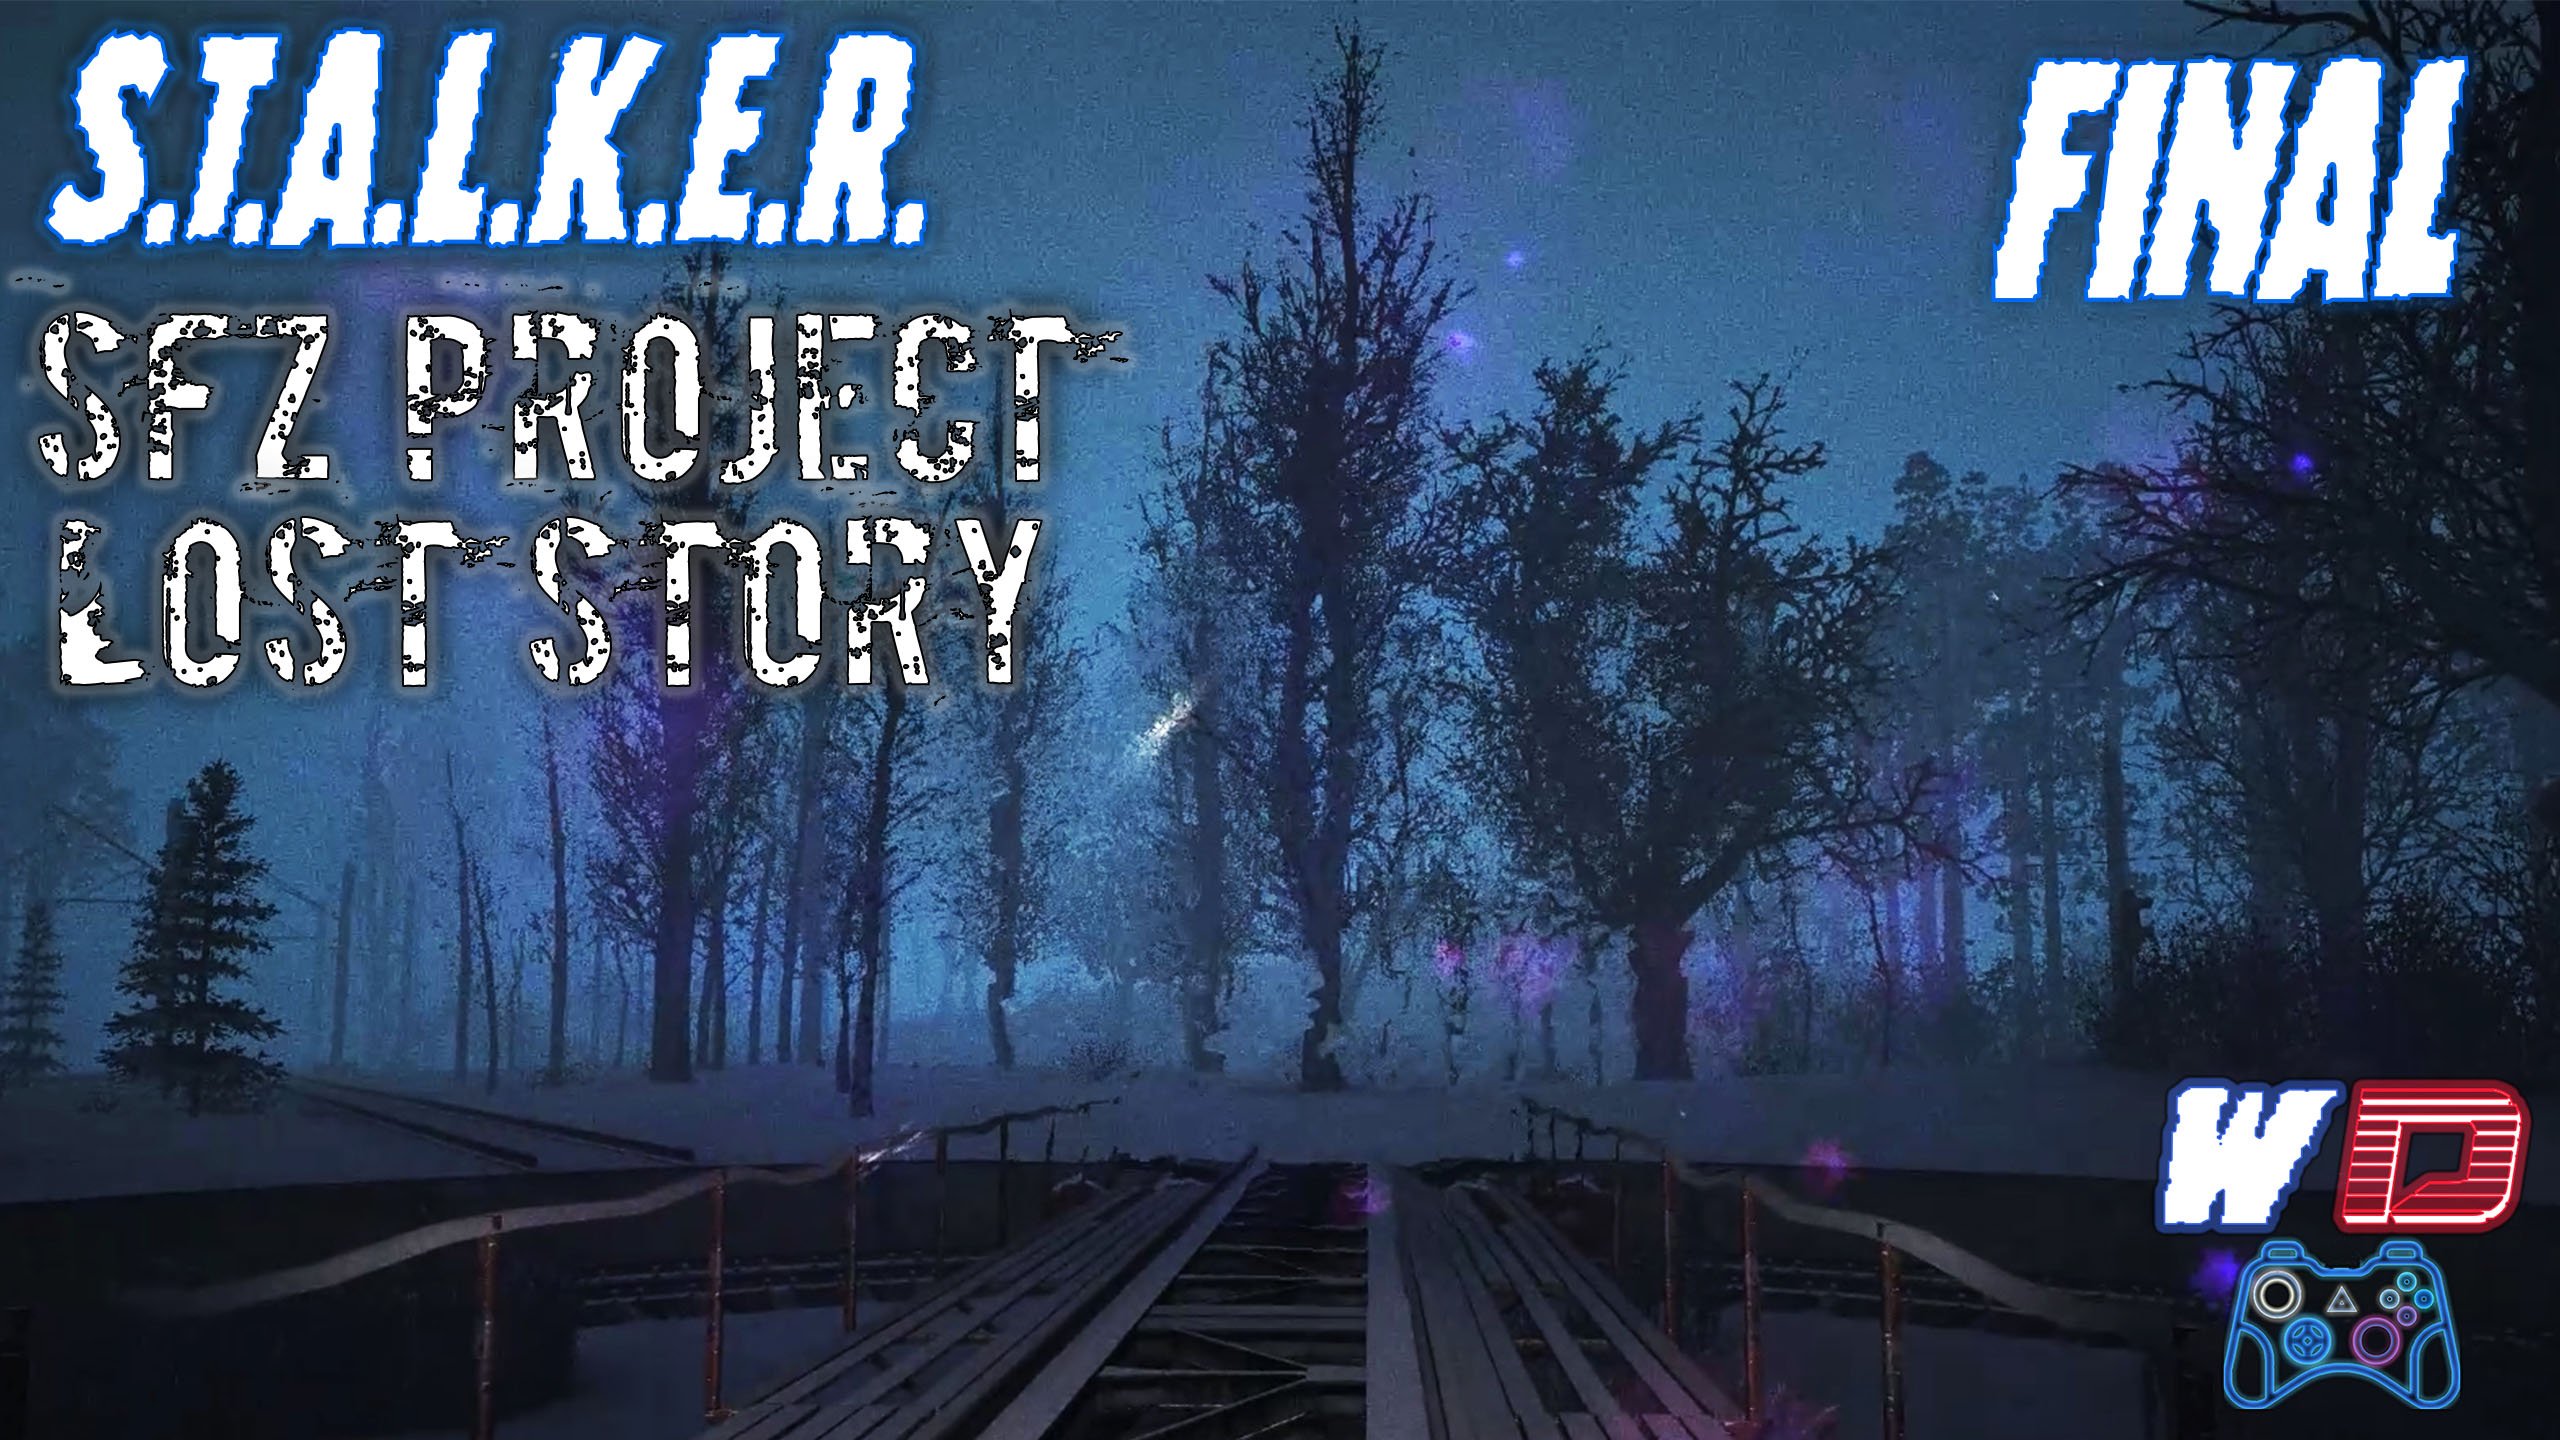 Материнская аномалия. S.T.A.L.K.E.R. SFZ Project Lost Story ❄️. Прохождение #3 (Финал)